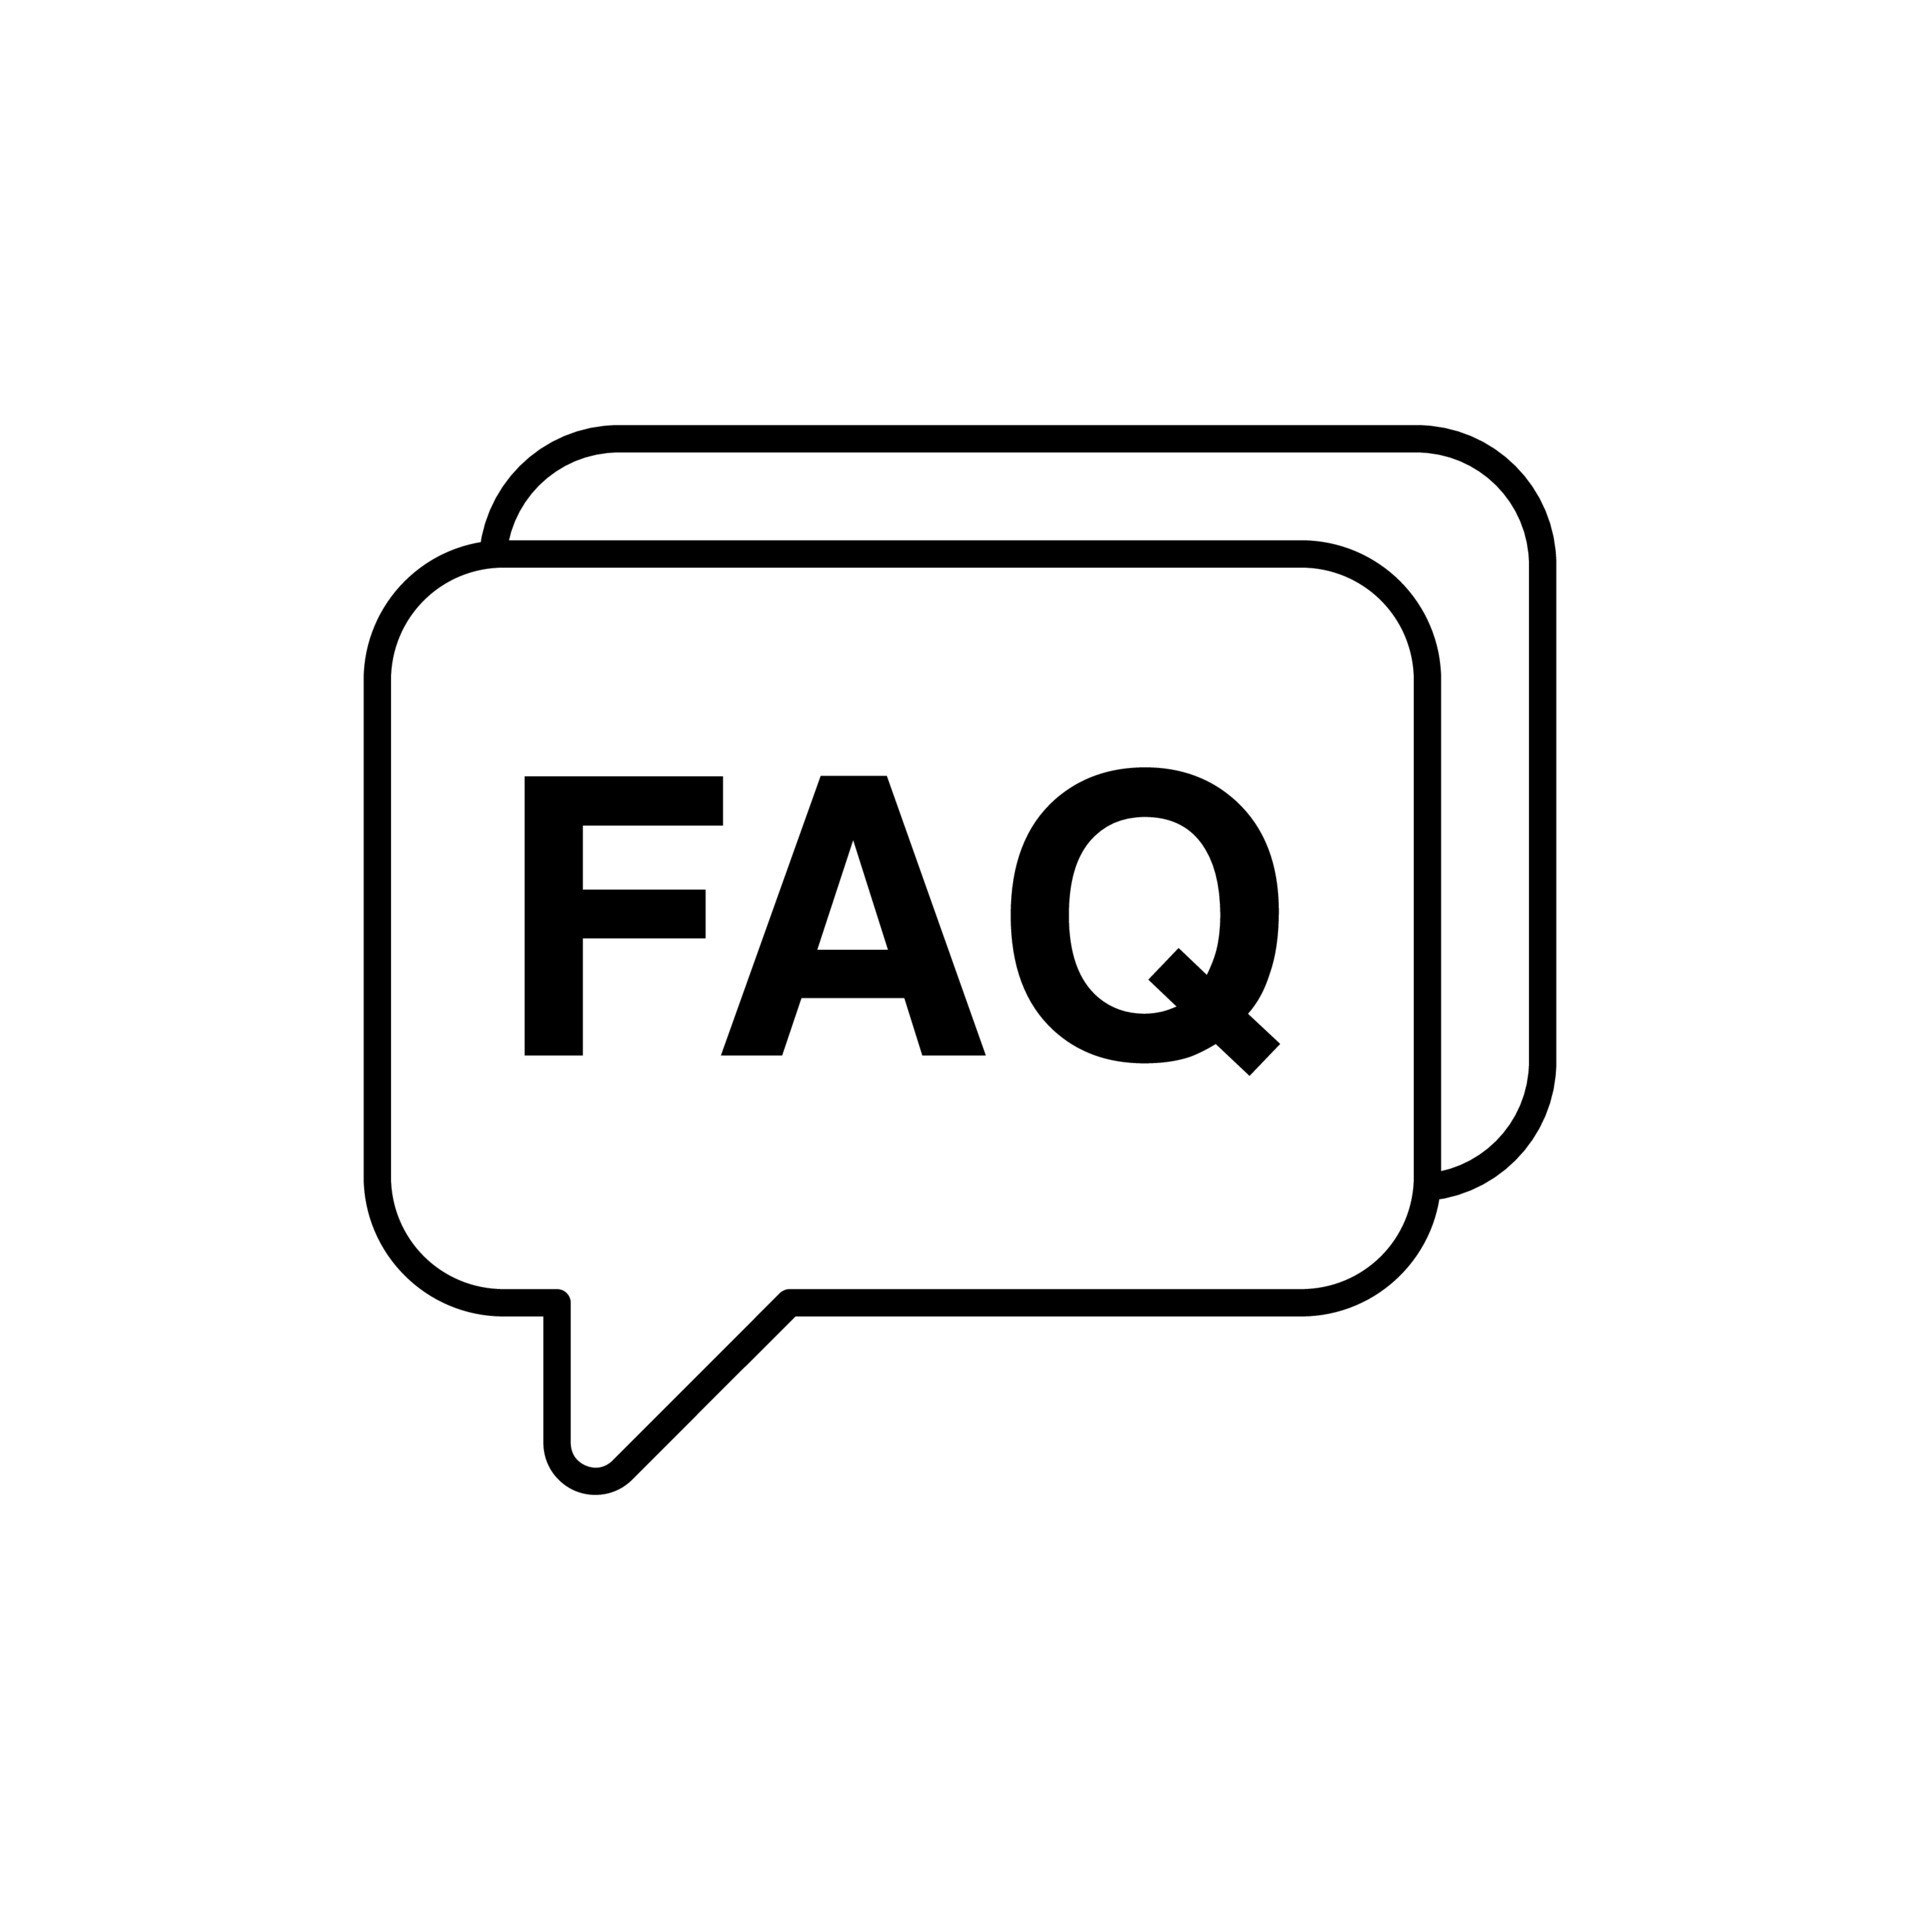 FAQ Generator logo